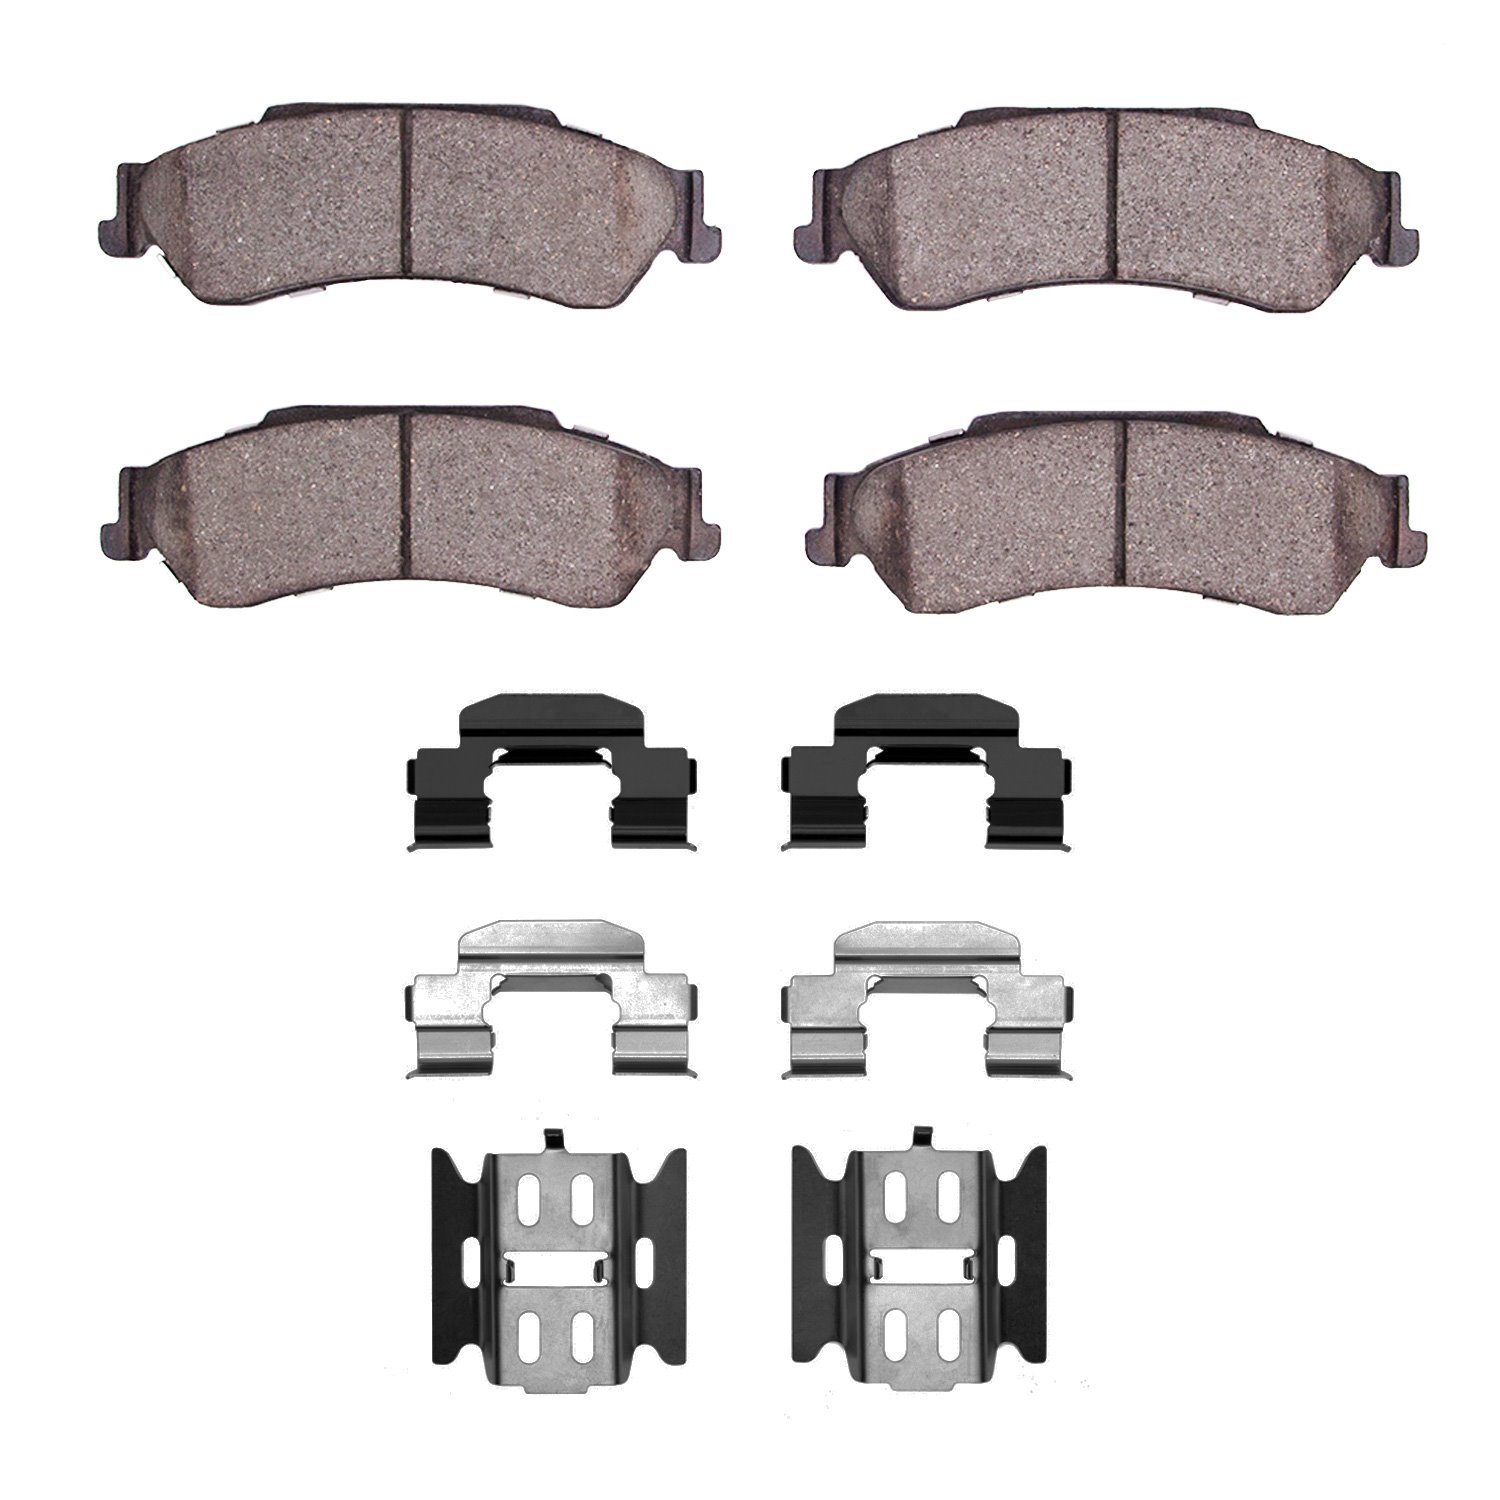 1311-0729-01 3000-Series Semi-Metallic Brake Pads & Hardware Kit, 1997-2005 GM, Position: Rear